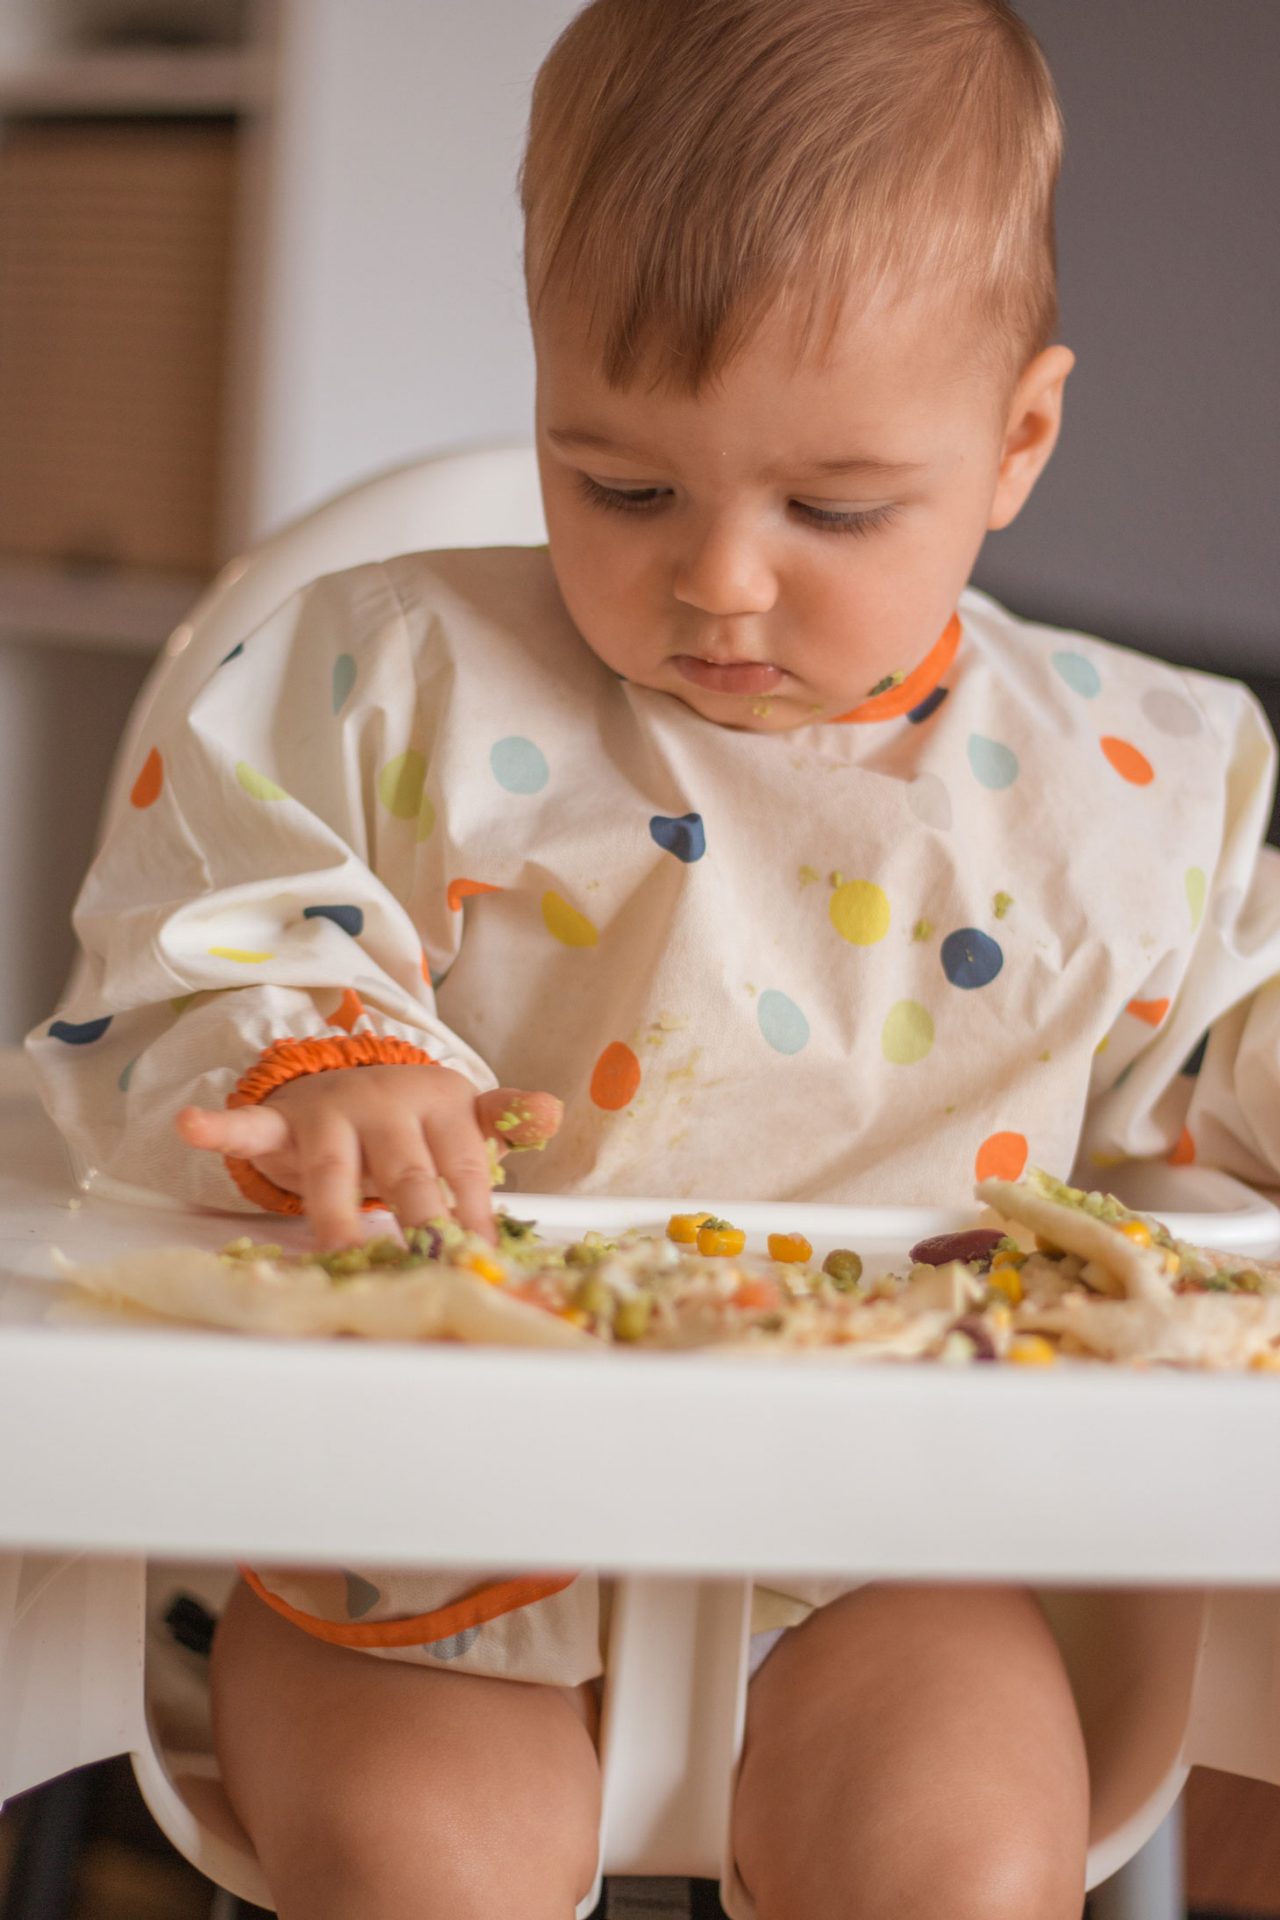 bébé mange tout seul ! carnet de suivi DME : vers une alimentation autonome  et diversifiée